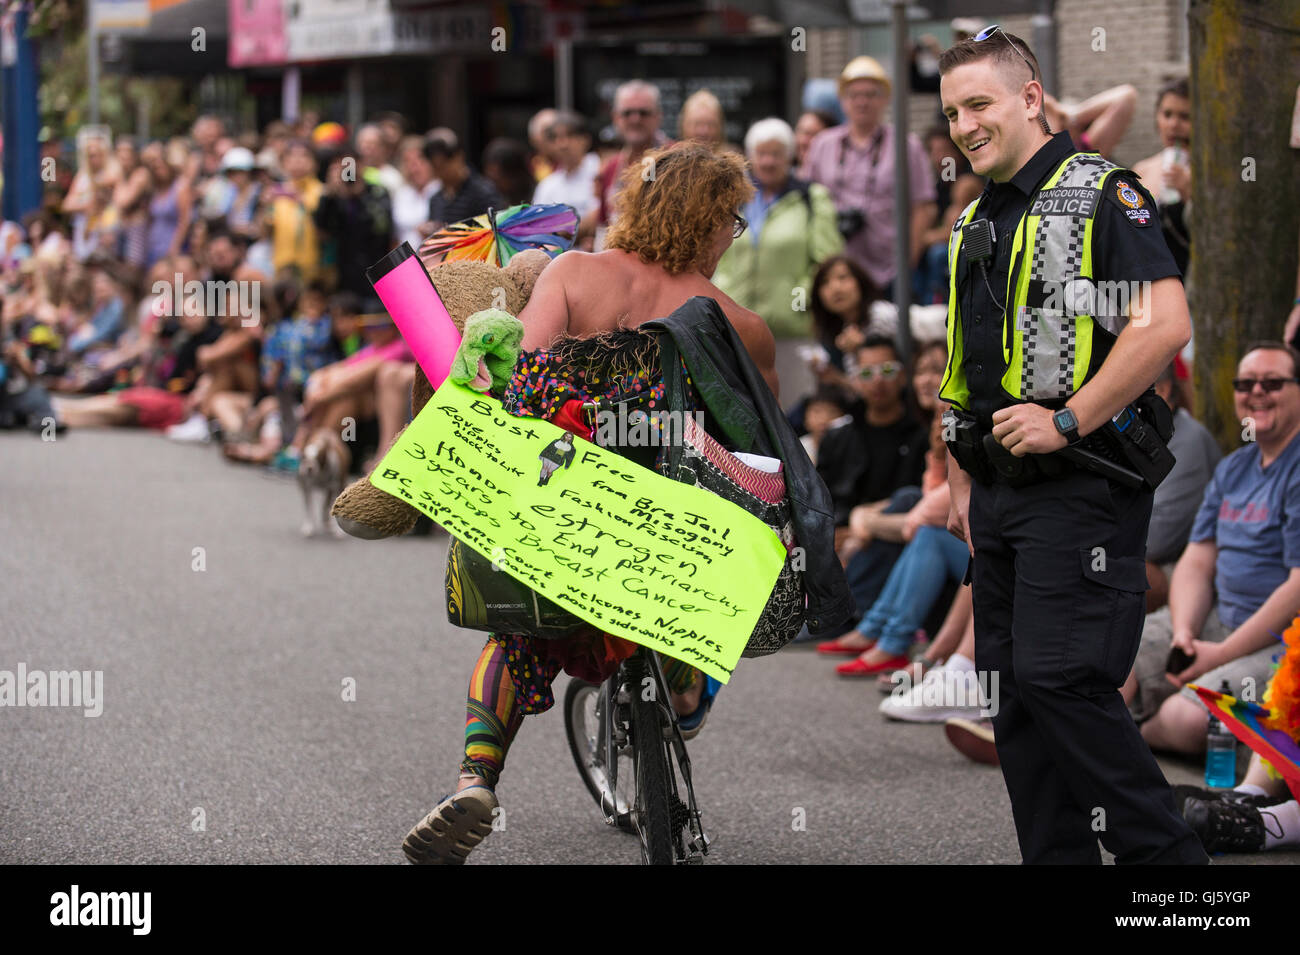 Vancouver-Polizist und Pride Parade Teilnehmer teilen sich einen Moment. Stockfoto